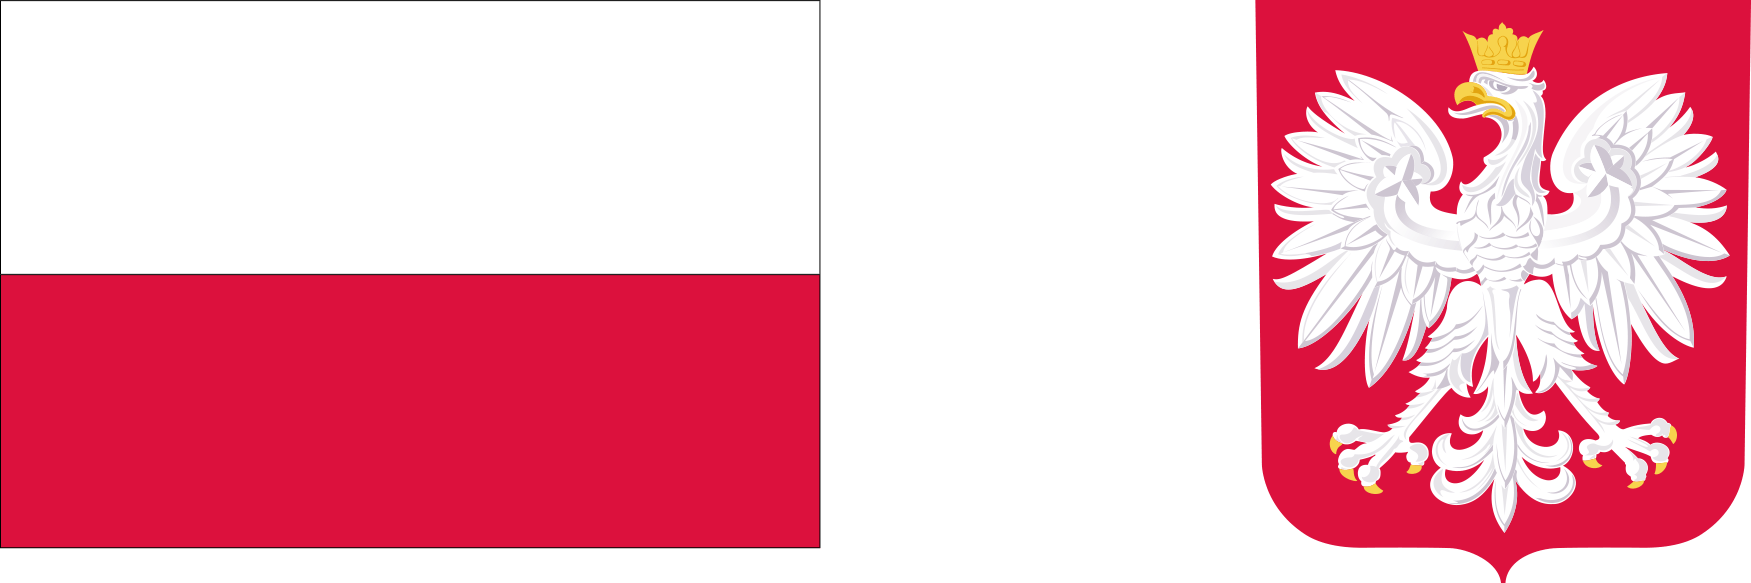 Obrazek z flagą oraz godłem Polski